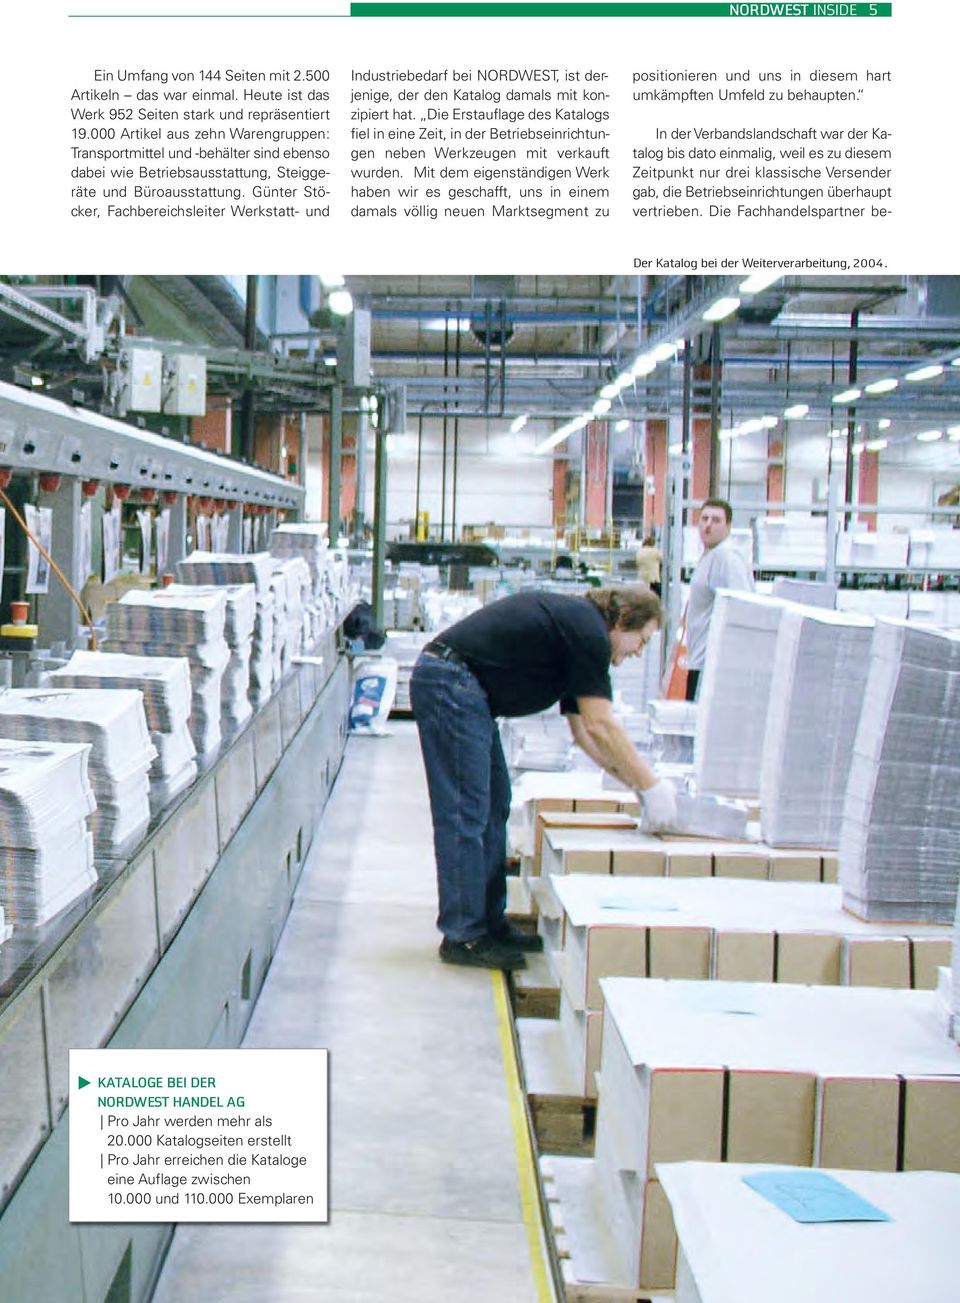 Günter Stöcker, Fachbereichsleiter Werkstatt- und Industriebedarf bei NORDWEST, ist derjenige, der den Katalog damals mit konzipiert hat.